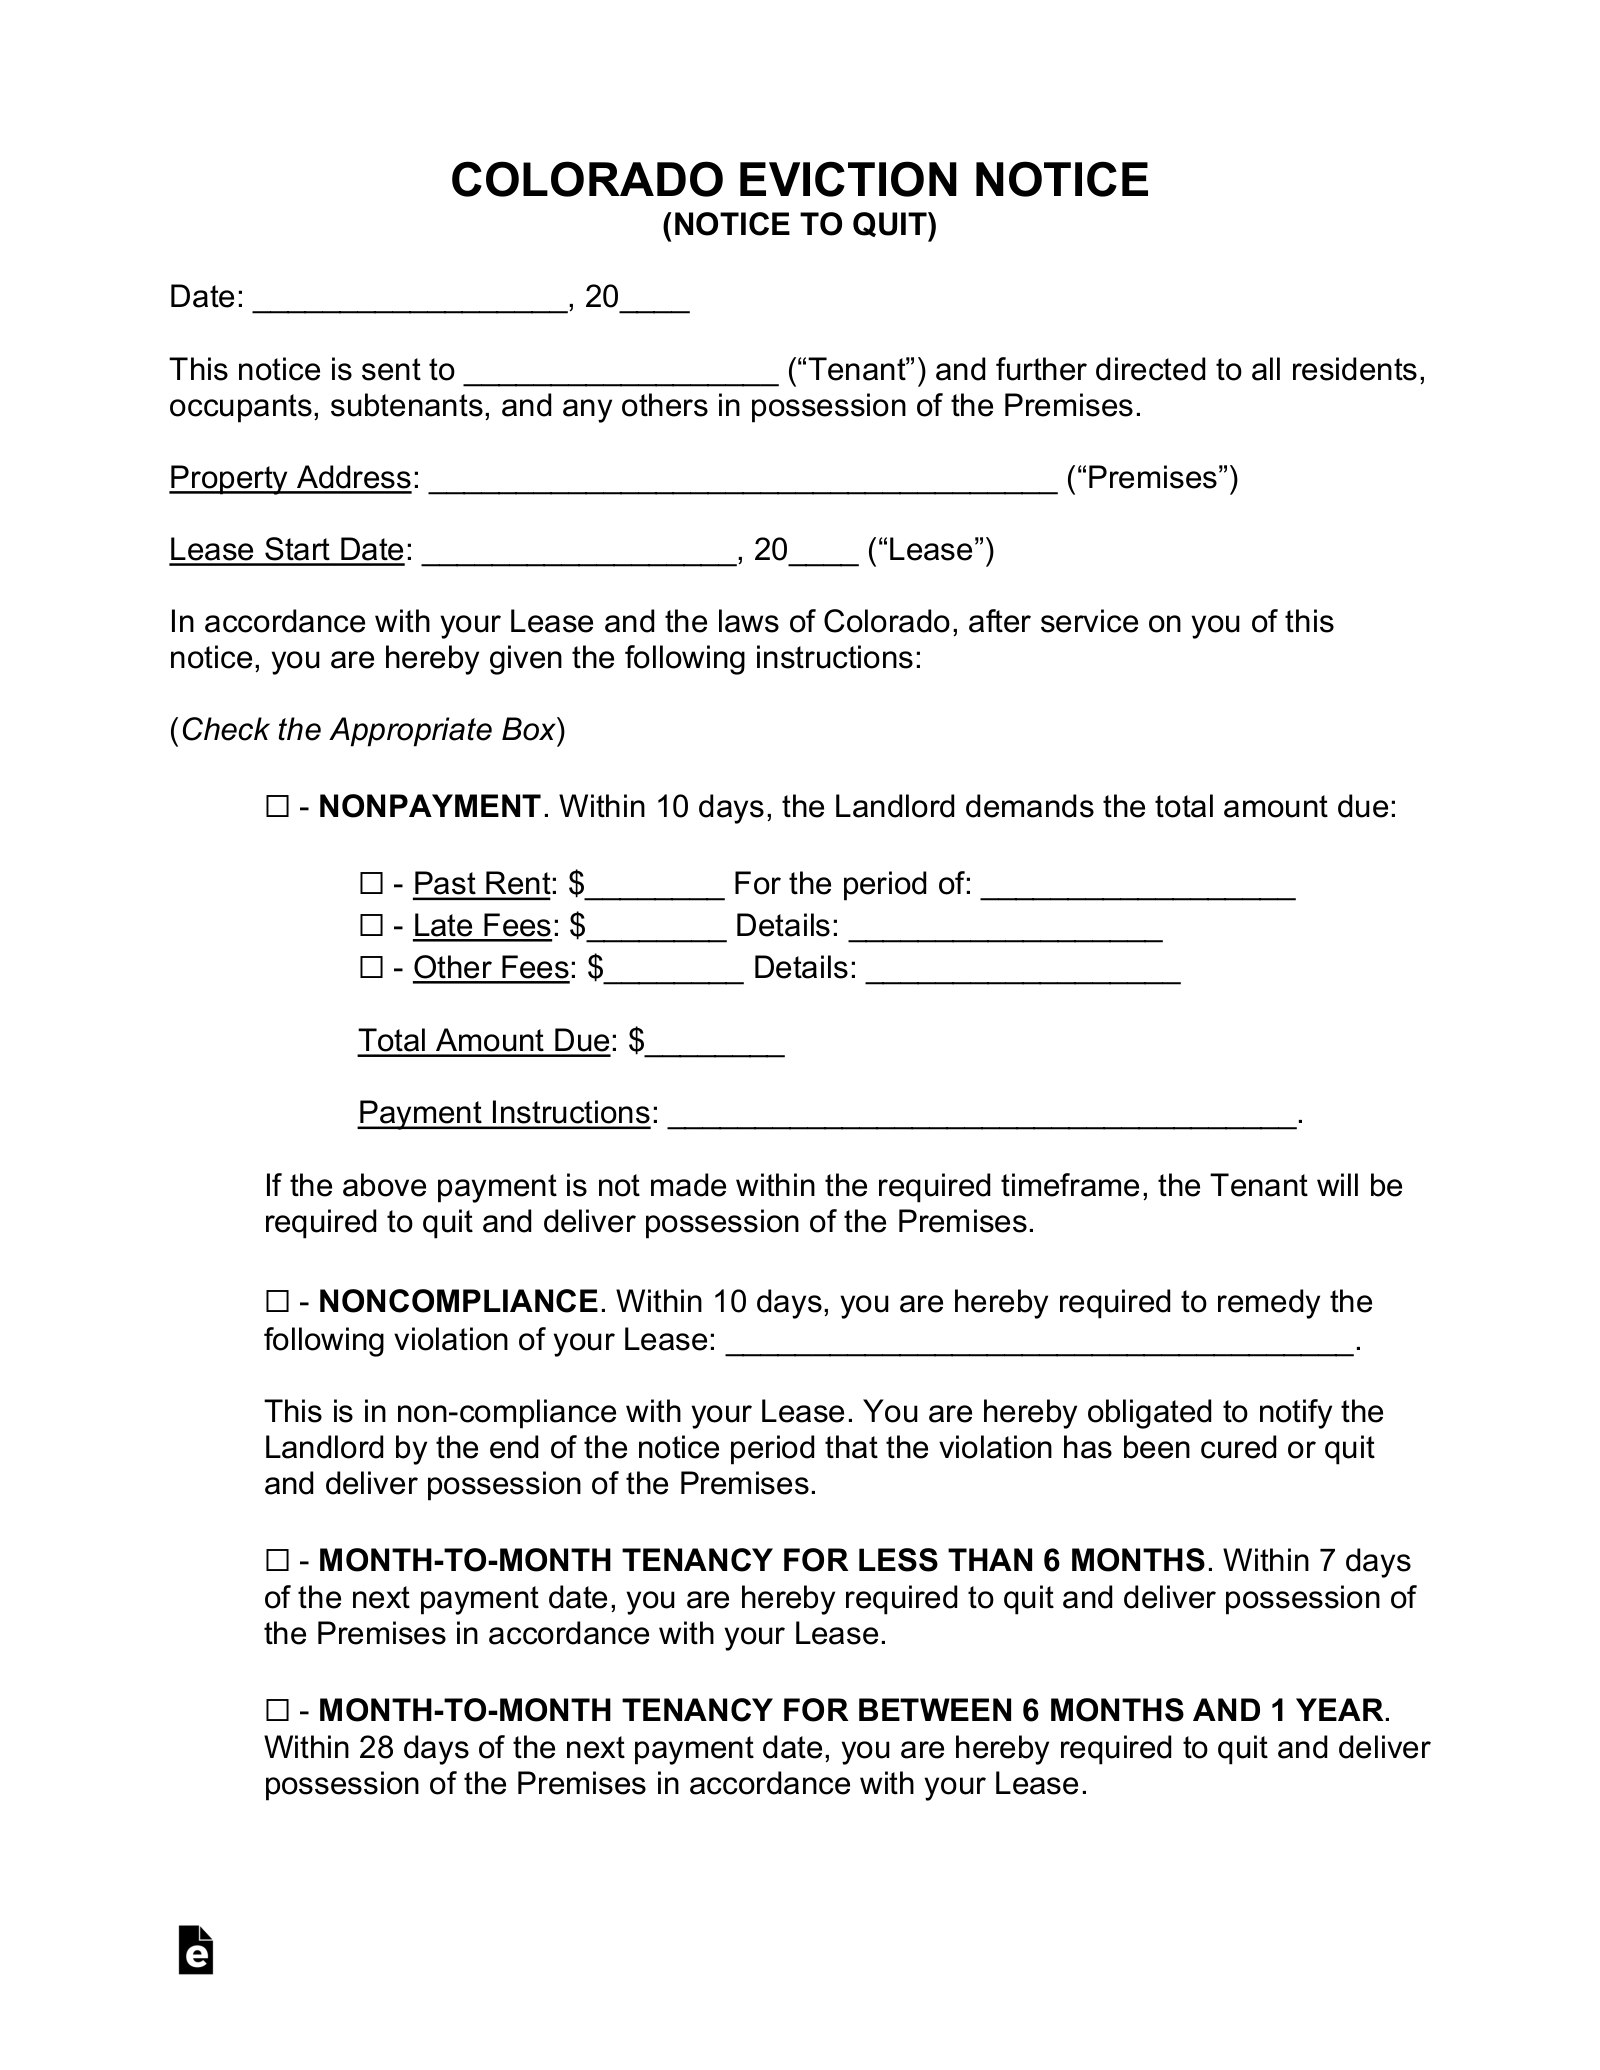 Colorado Eviction Notice Forms (2)